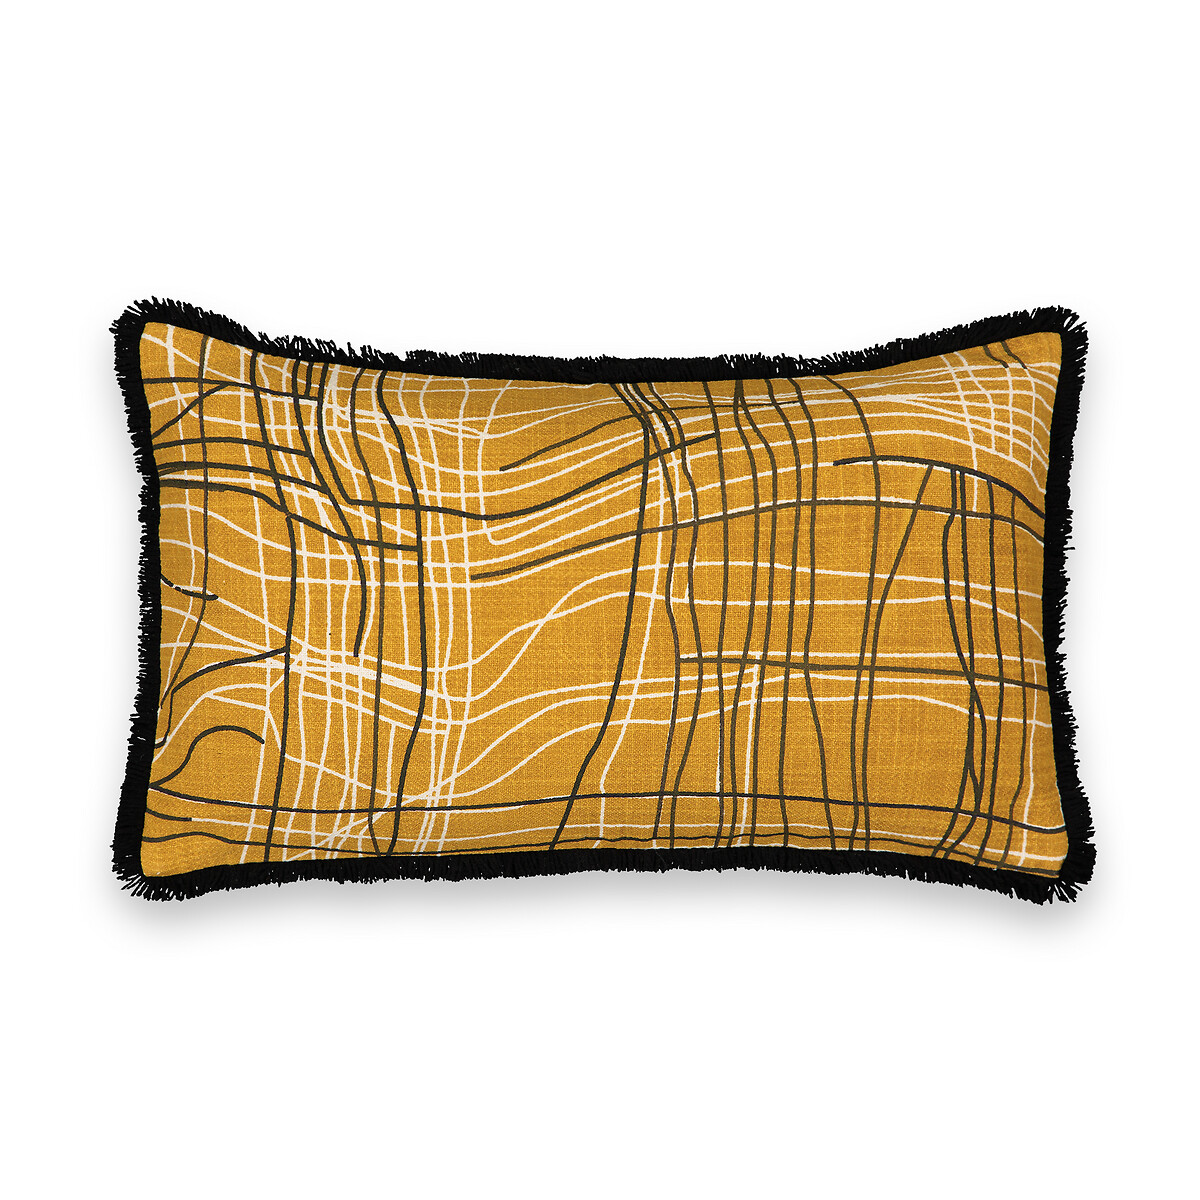 Чехол На подушку с отделкой ворсом Dalian 50 x 30 см желтый